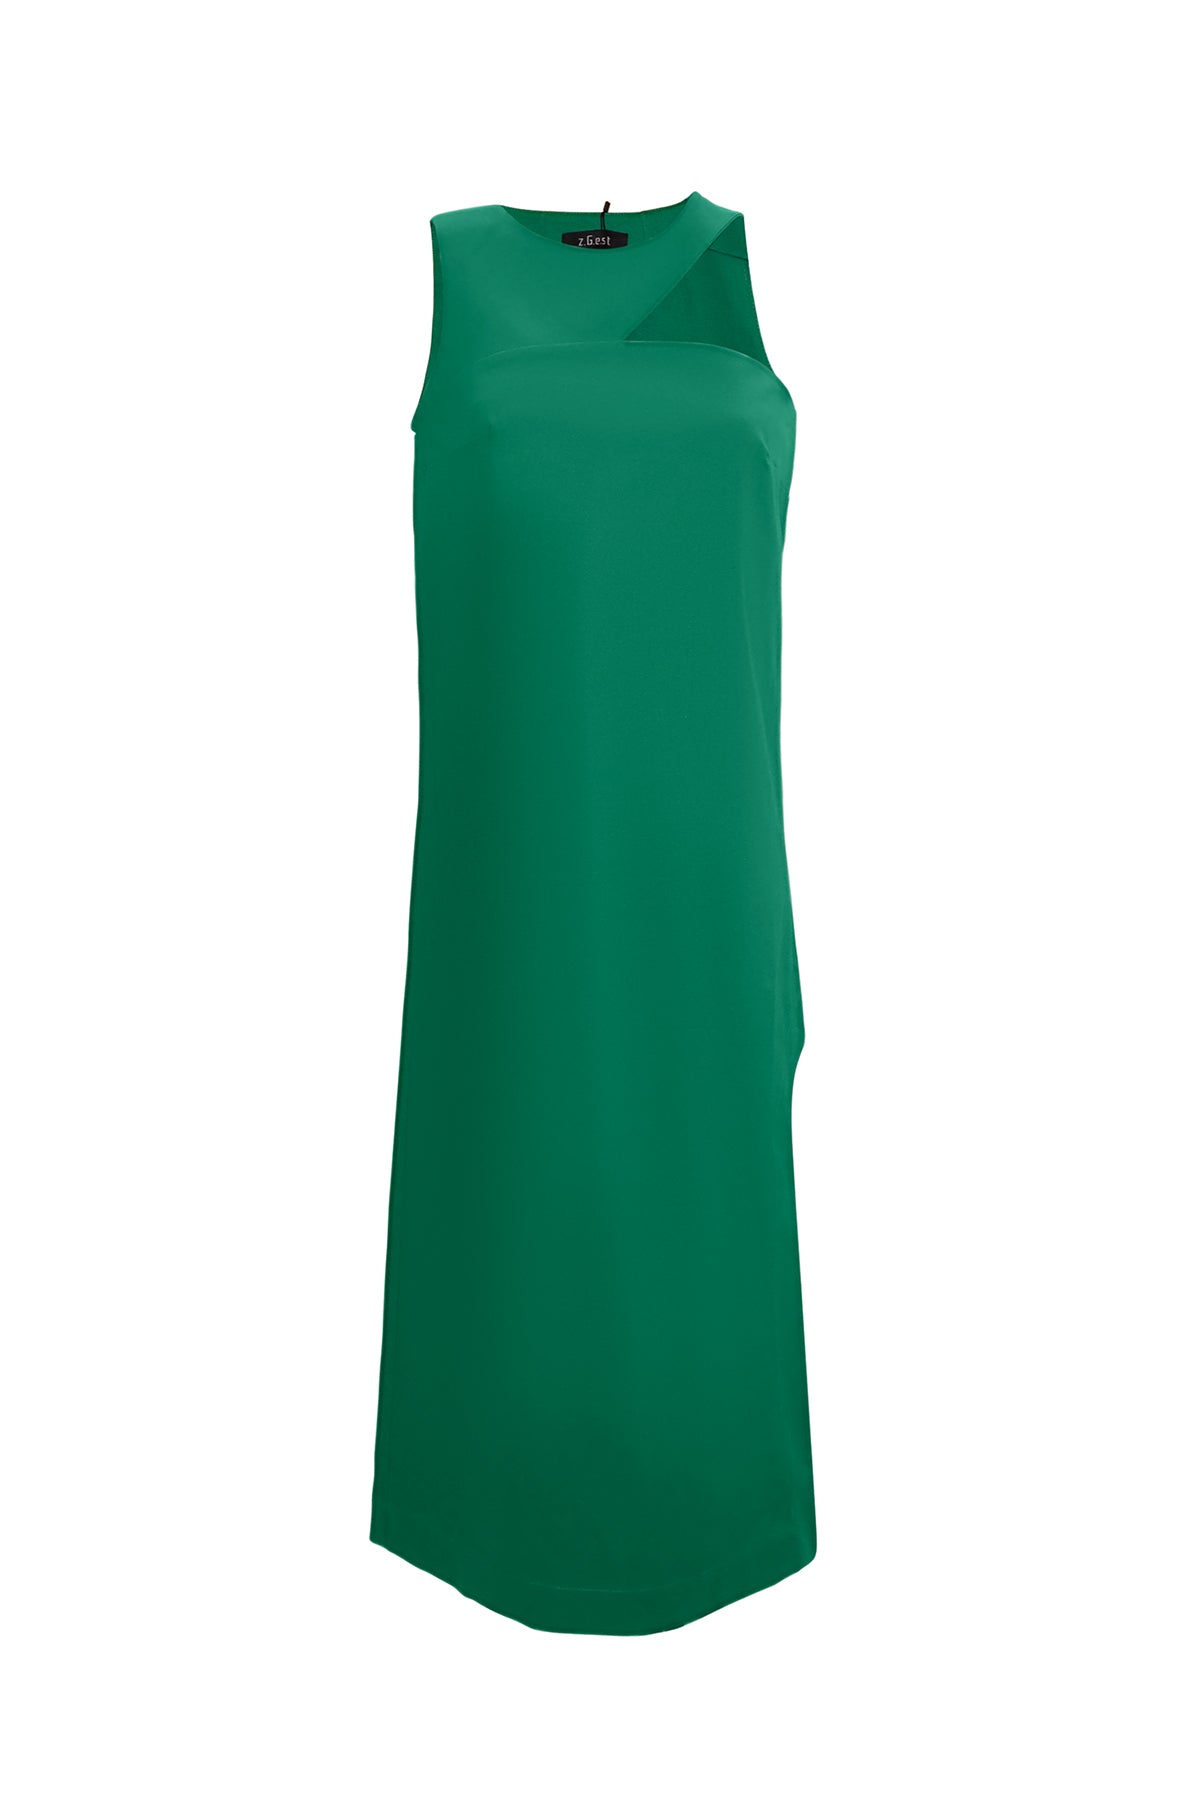 ZGEST Ava Green  Cut-Out Dress